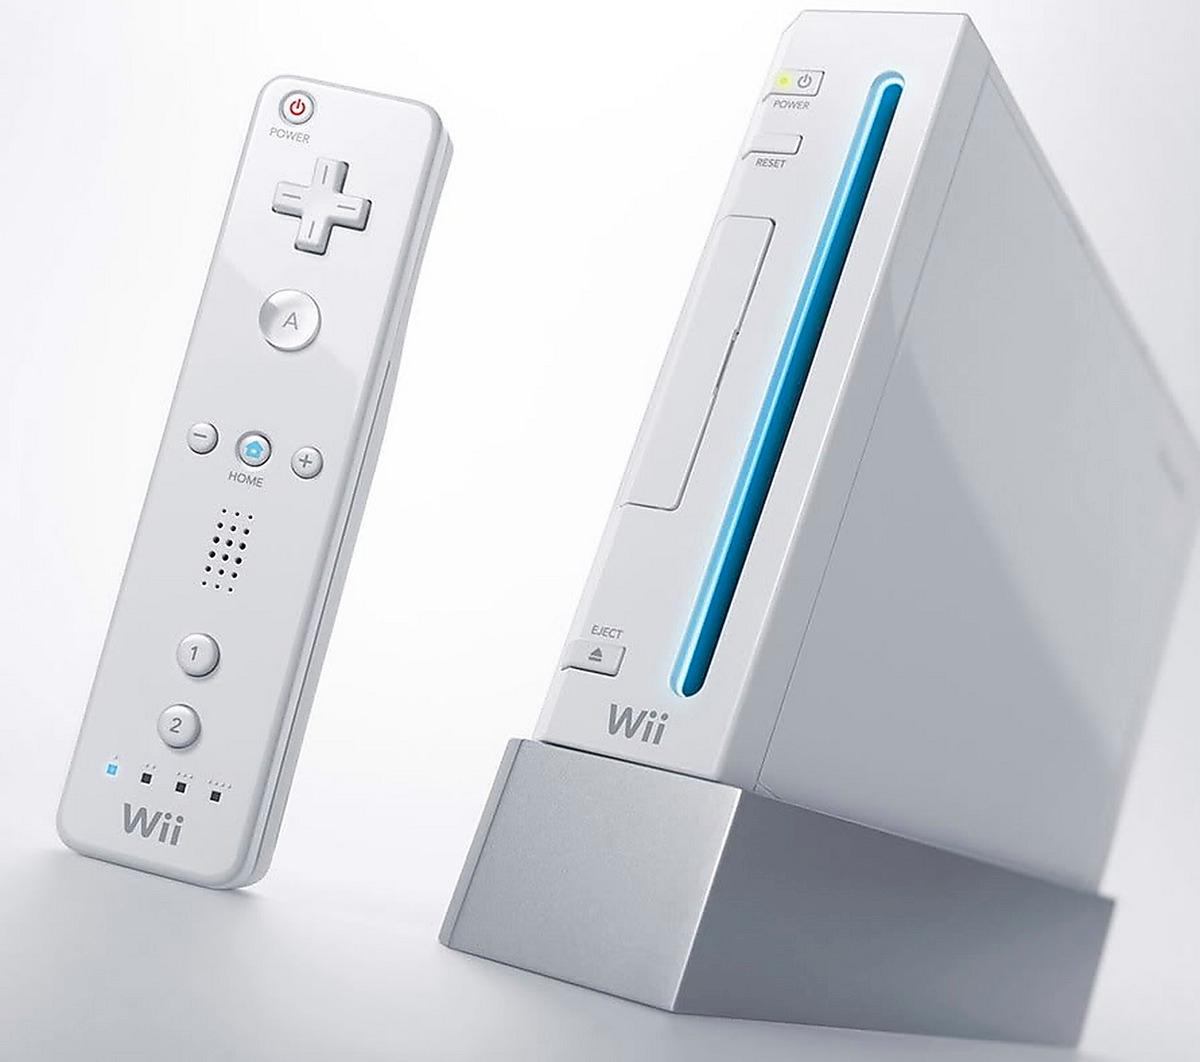 SJUNKER SOM EN STEN Fortsatt svåra tider för Nintendo – som nu hoppas vända Wii-försäljningen samtidigt som de förbereder lanseringen av en ny konsol nästa år.